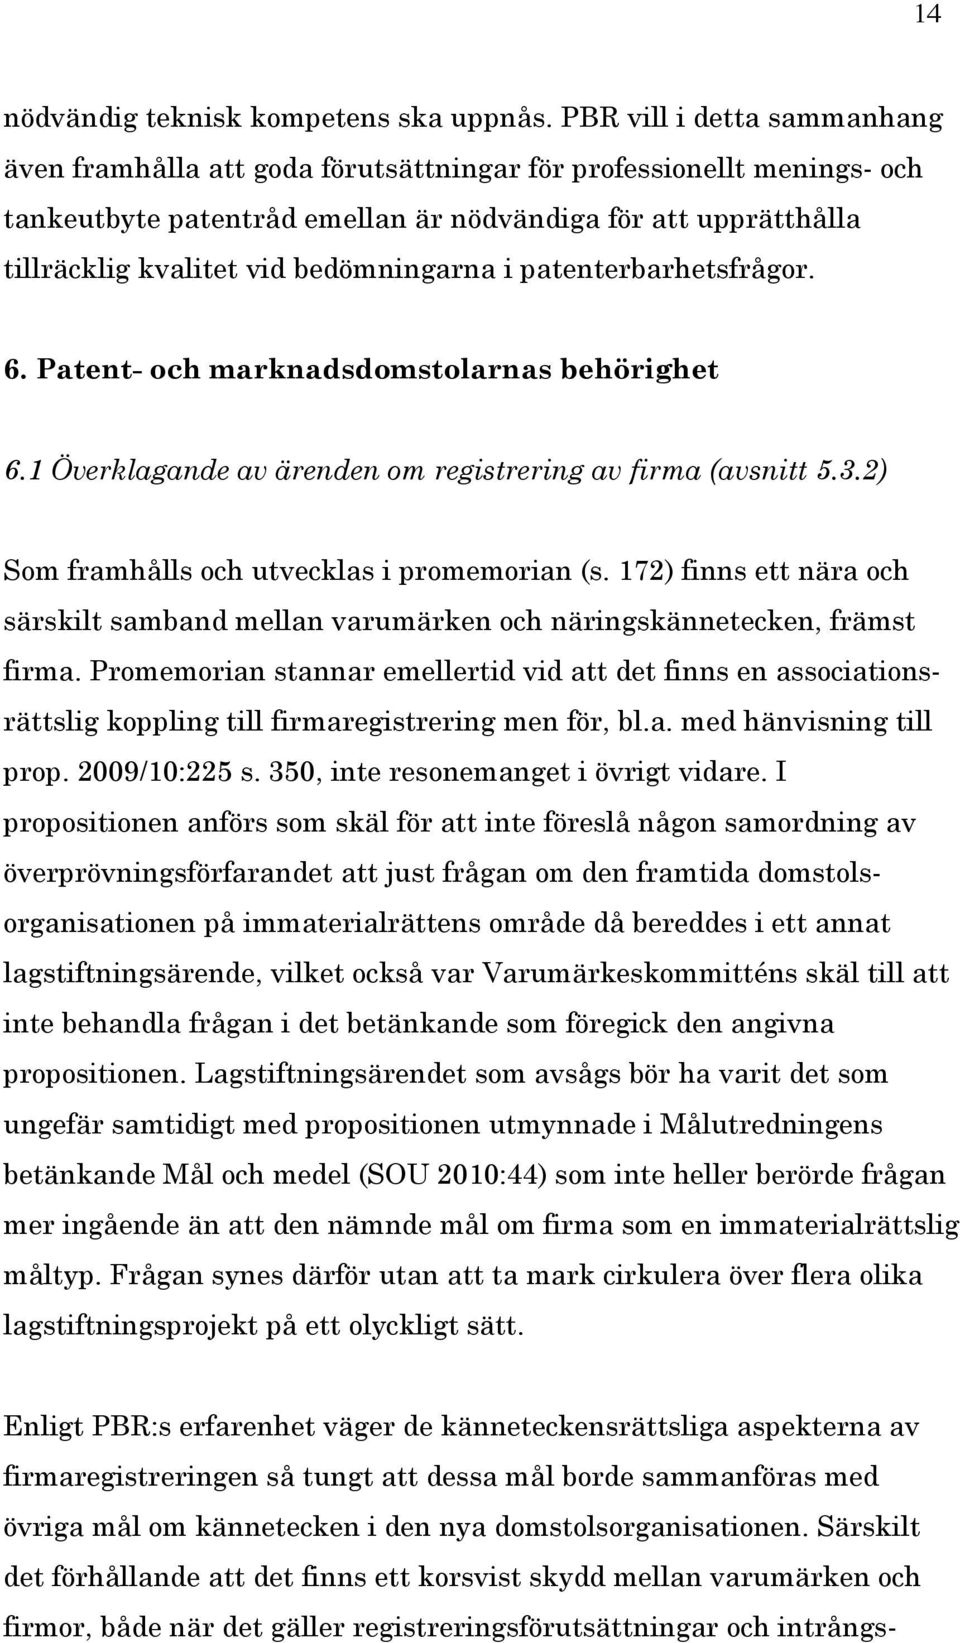 bedömningarna i patenterbarhetsfrågor. 6. Patent- och marknadsdomstolarnas behörighet 6.1 Överklagande av ärenden om registrering av firma (avsnitt 5.3.2) Som framhålls och utvecklas i promemorian (s.